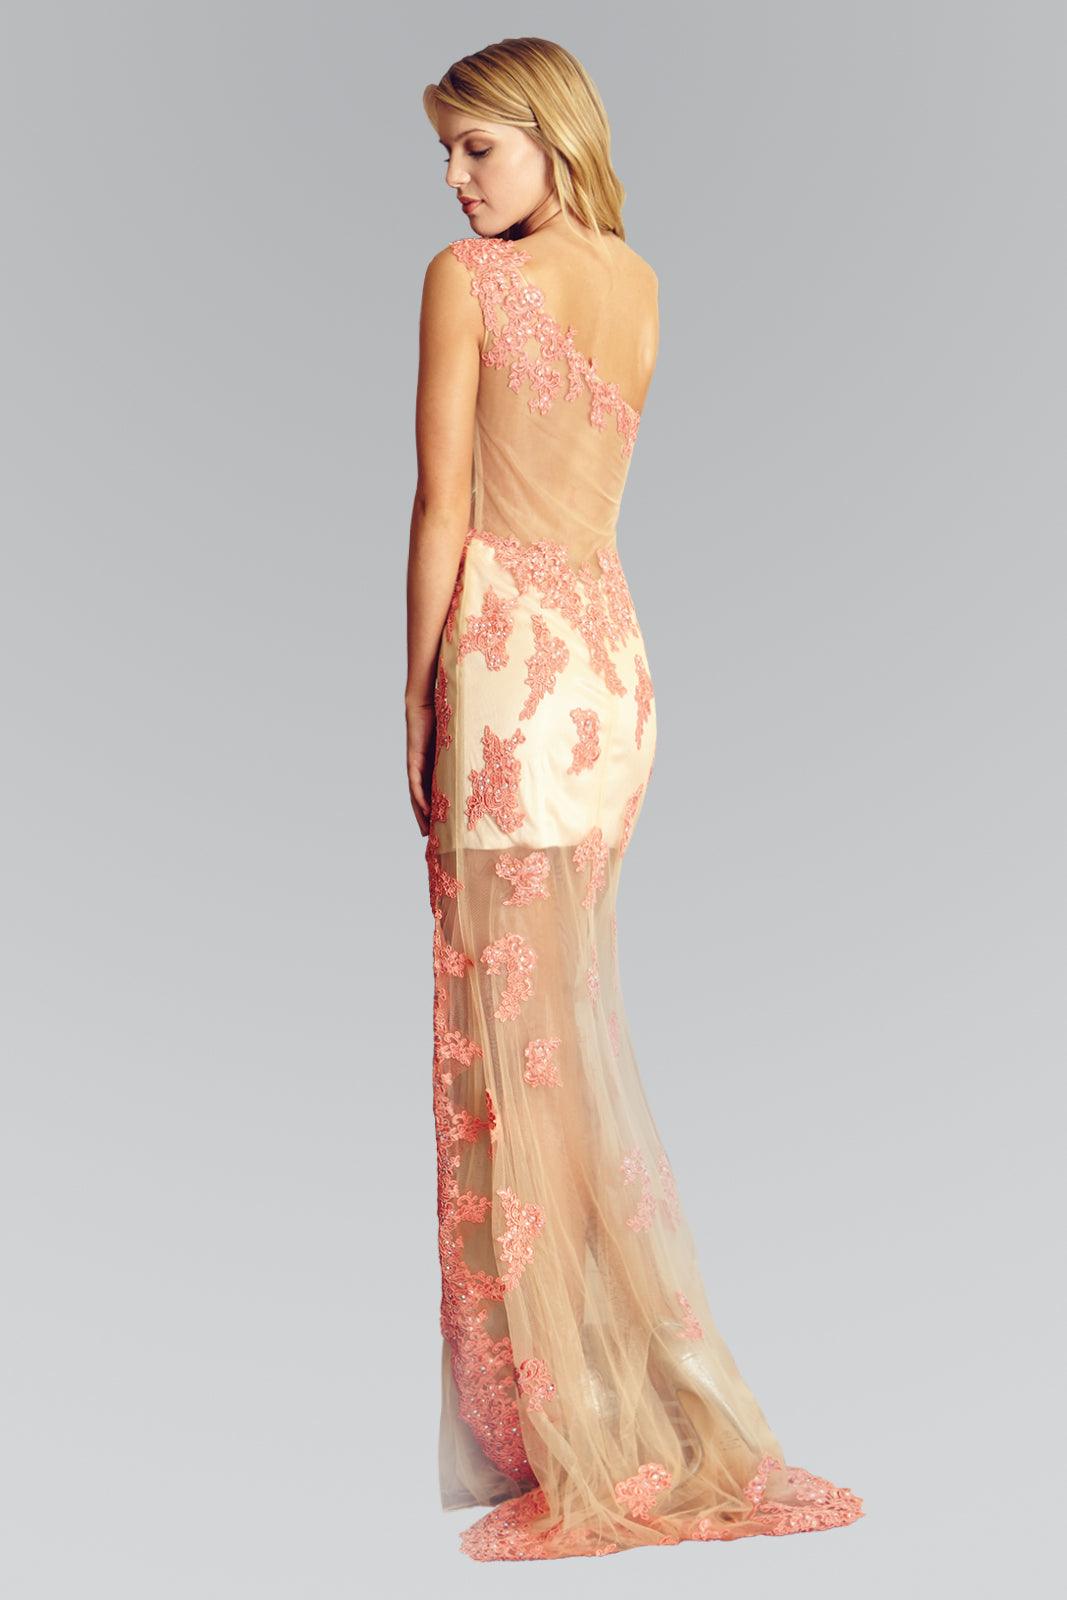 Prom Long Formal One Shoulder Evening Dress - The Dress Outlet Elizabeth K